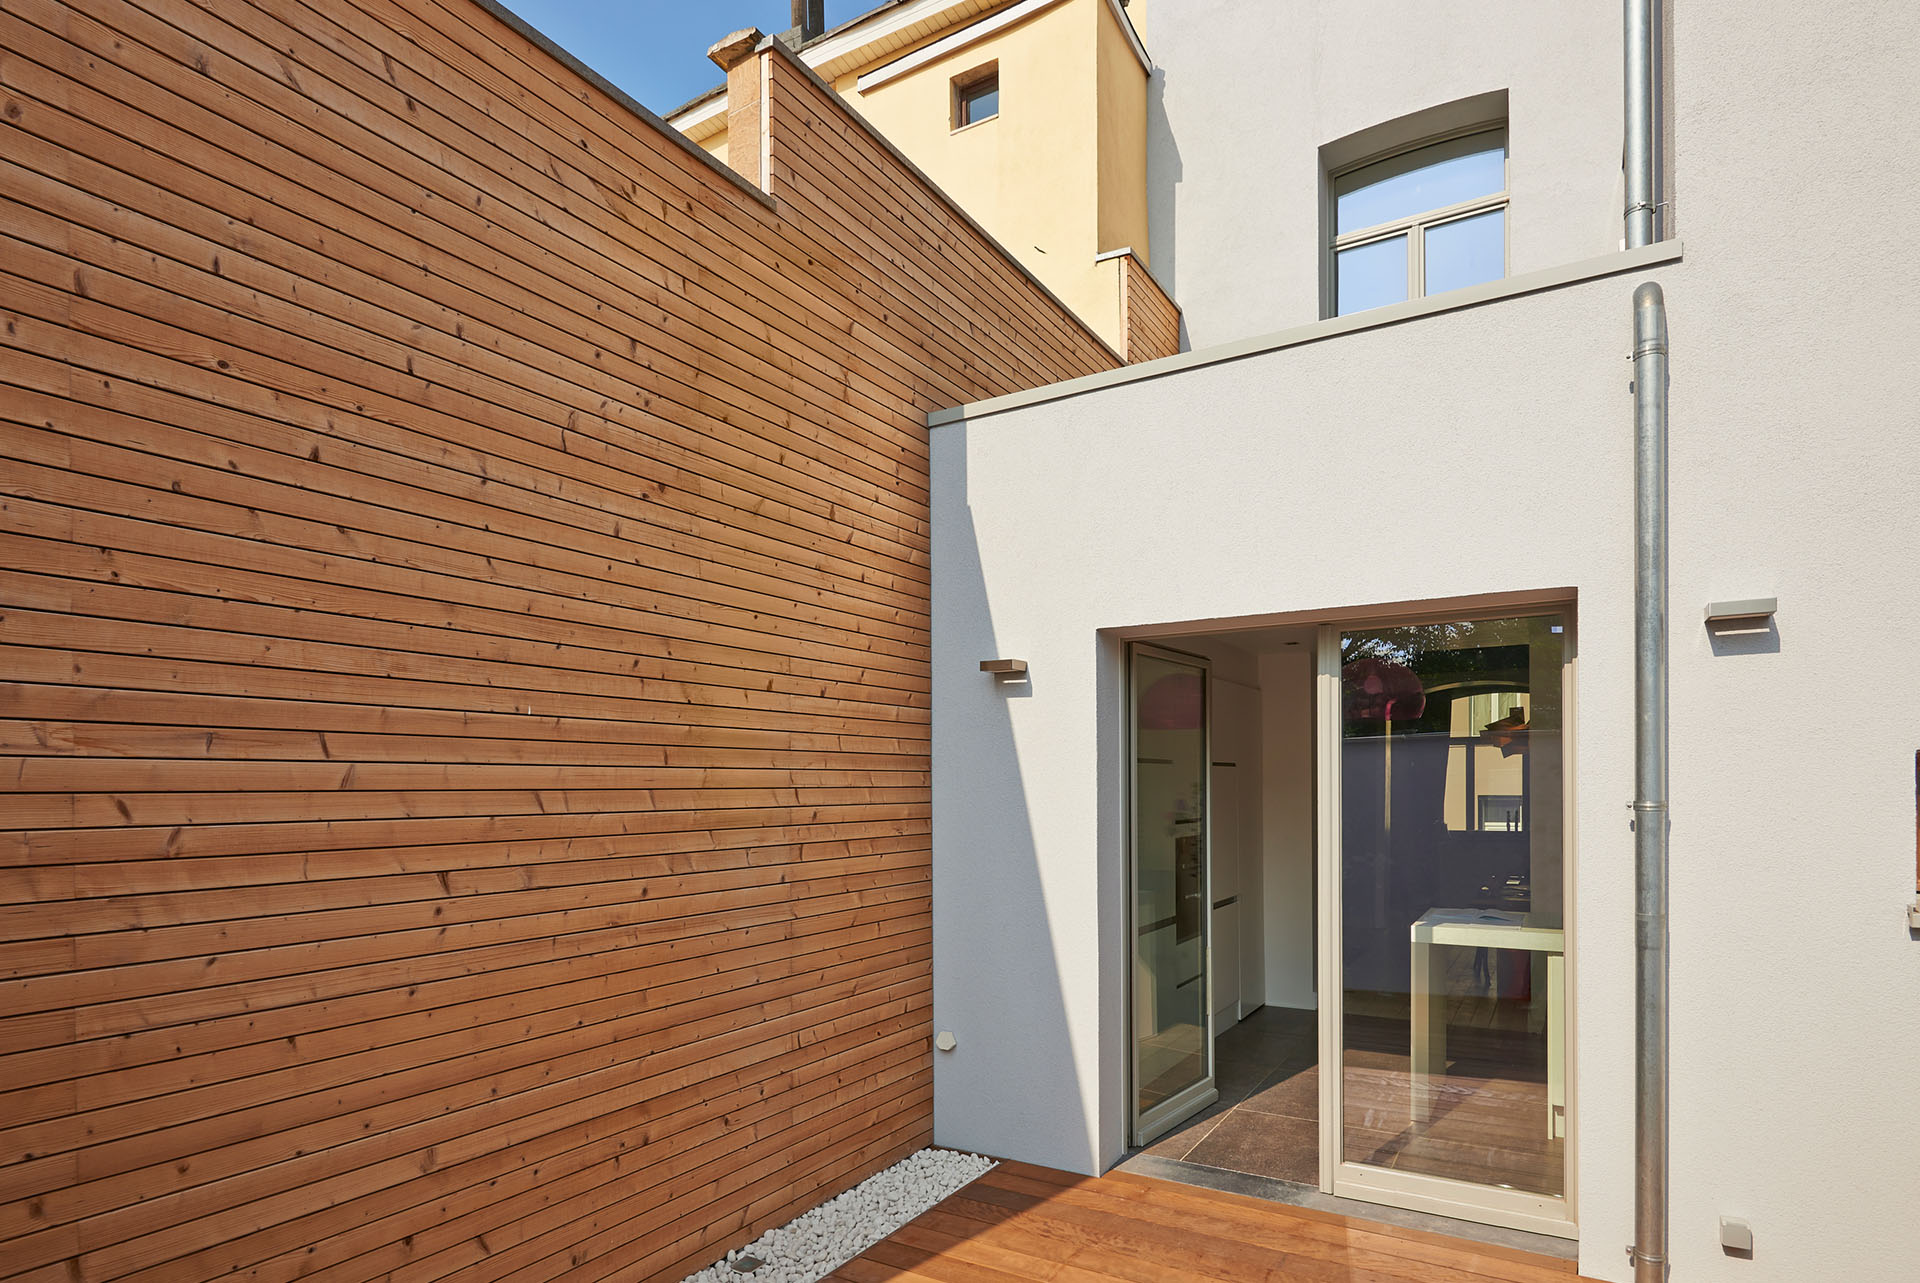 timber-cladding-weatherboards-external-sheet-material-exterior-wall-design-horizontal